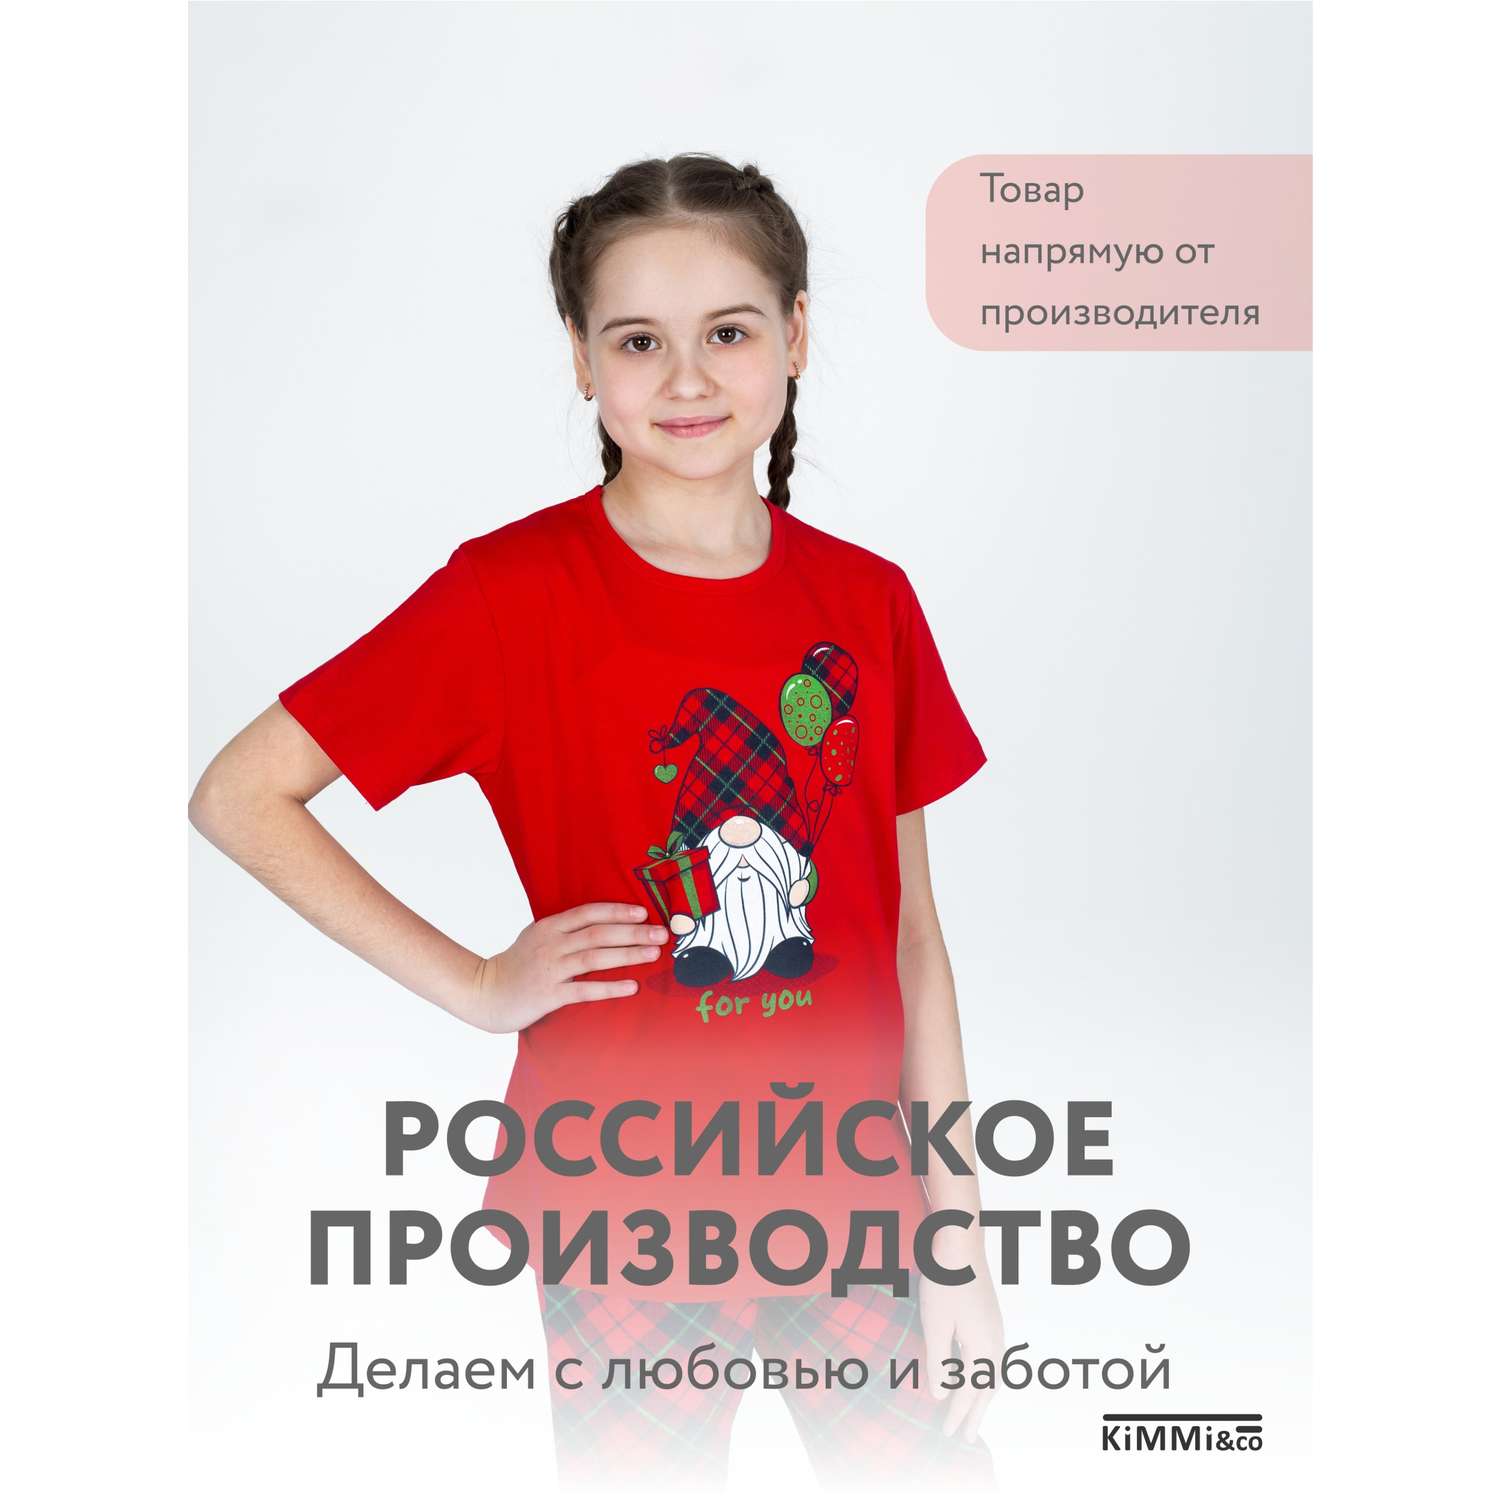 Детская одежда оптом в Новосибирске: детский трикотаж от производителя «Элит Классик»!